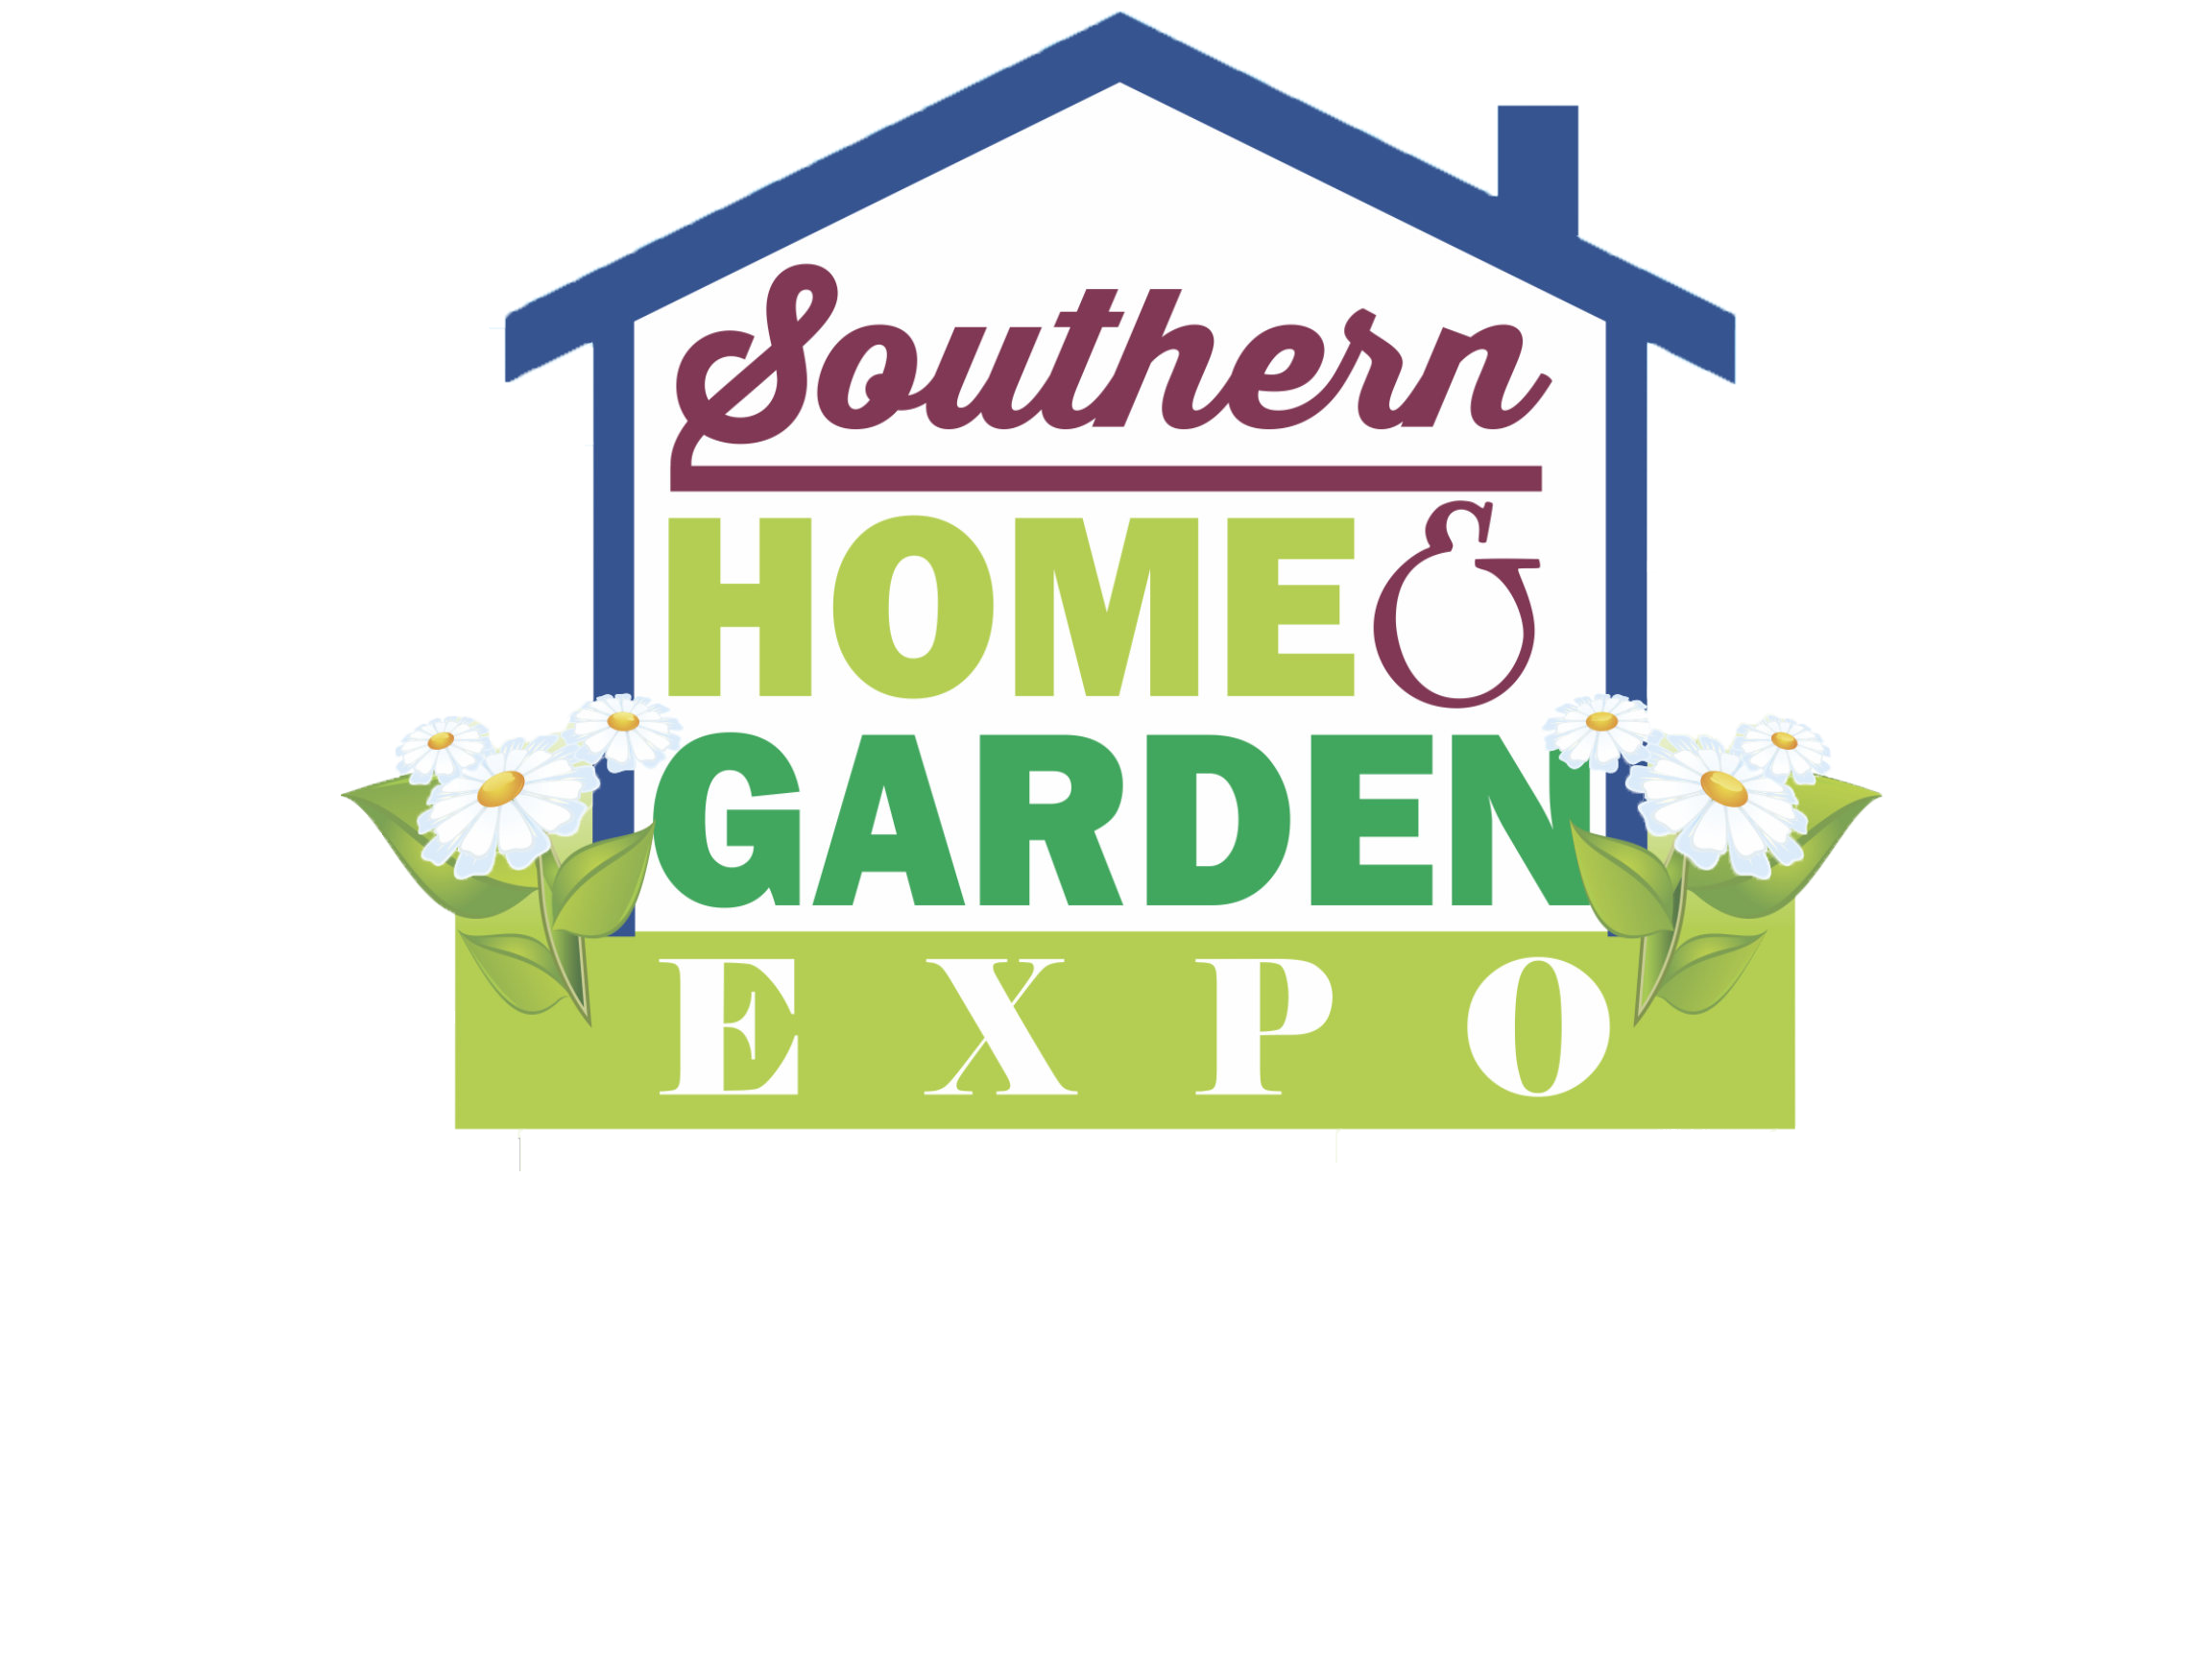 Southern Home and Garden Expo logo